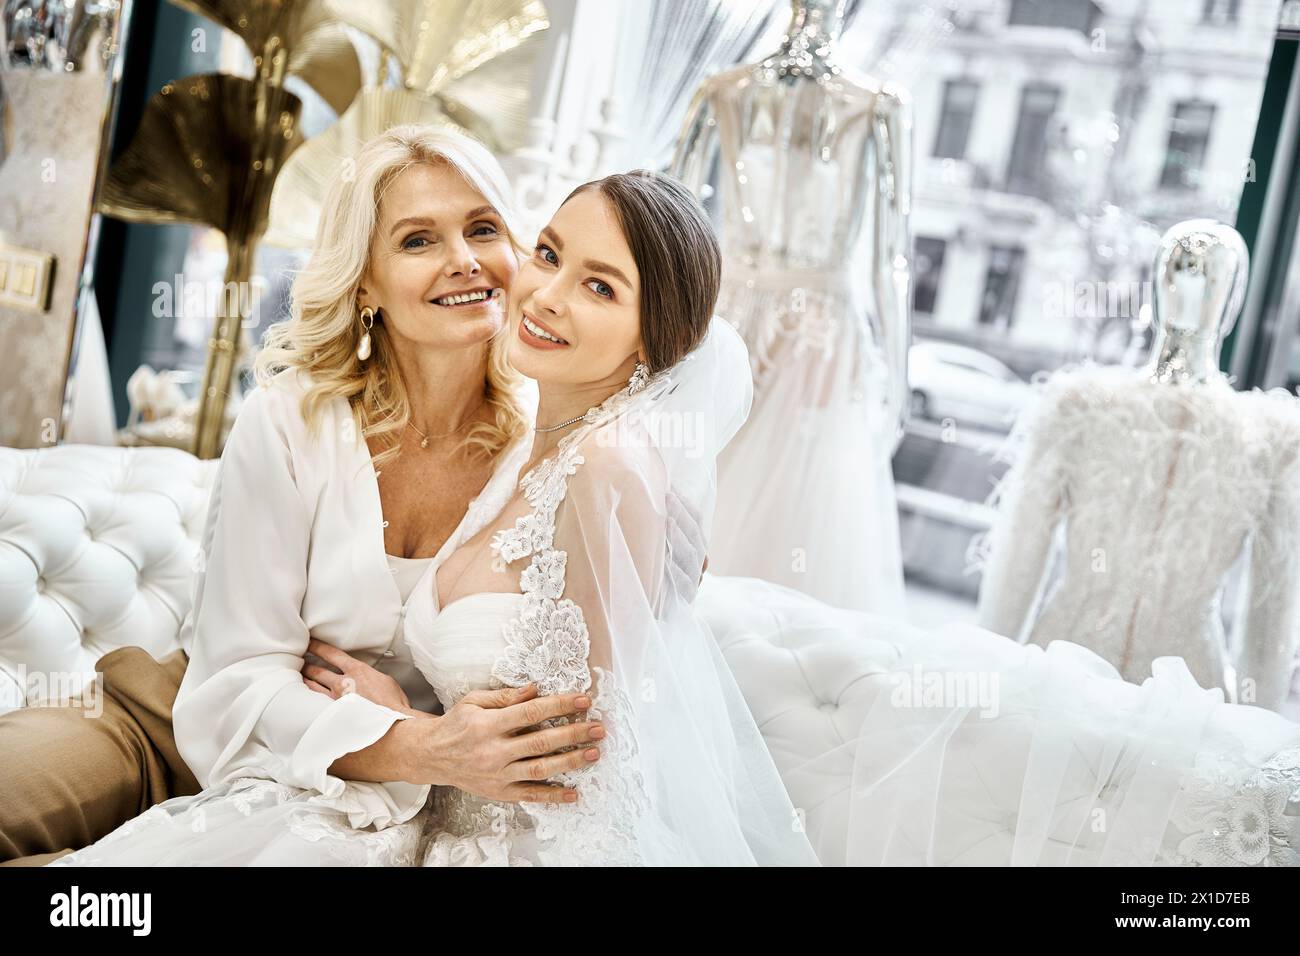 Eine junge brünette Braut und ihre blonde Mutter mittleren Alters sitzen zusammen in Brautkleidern in einem Brautsalon. Stockfoto